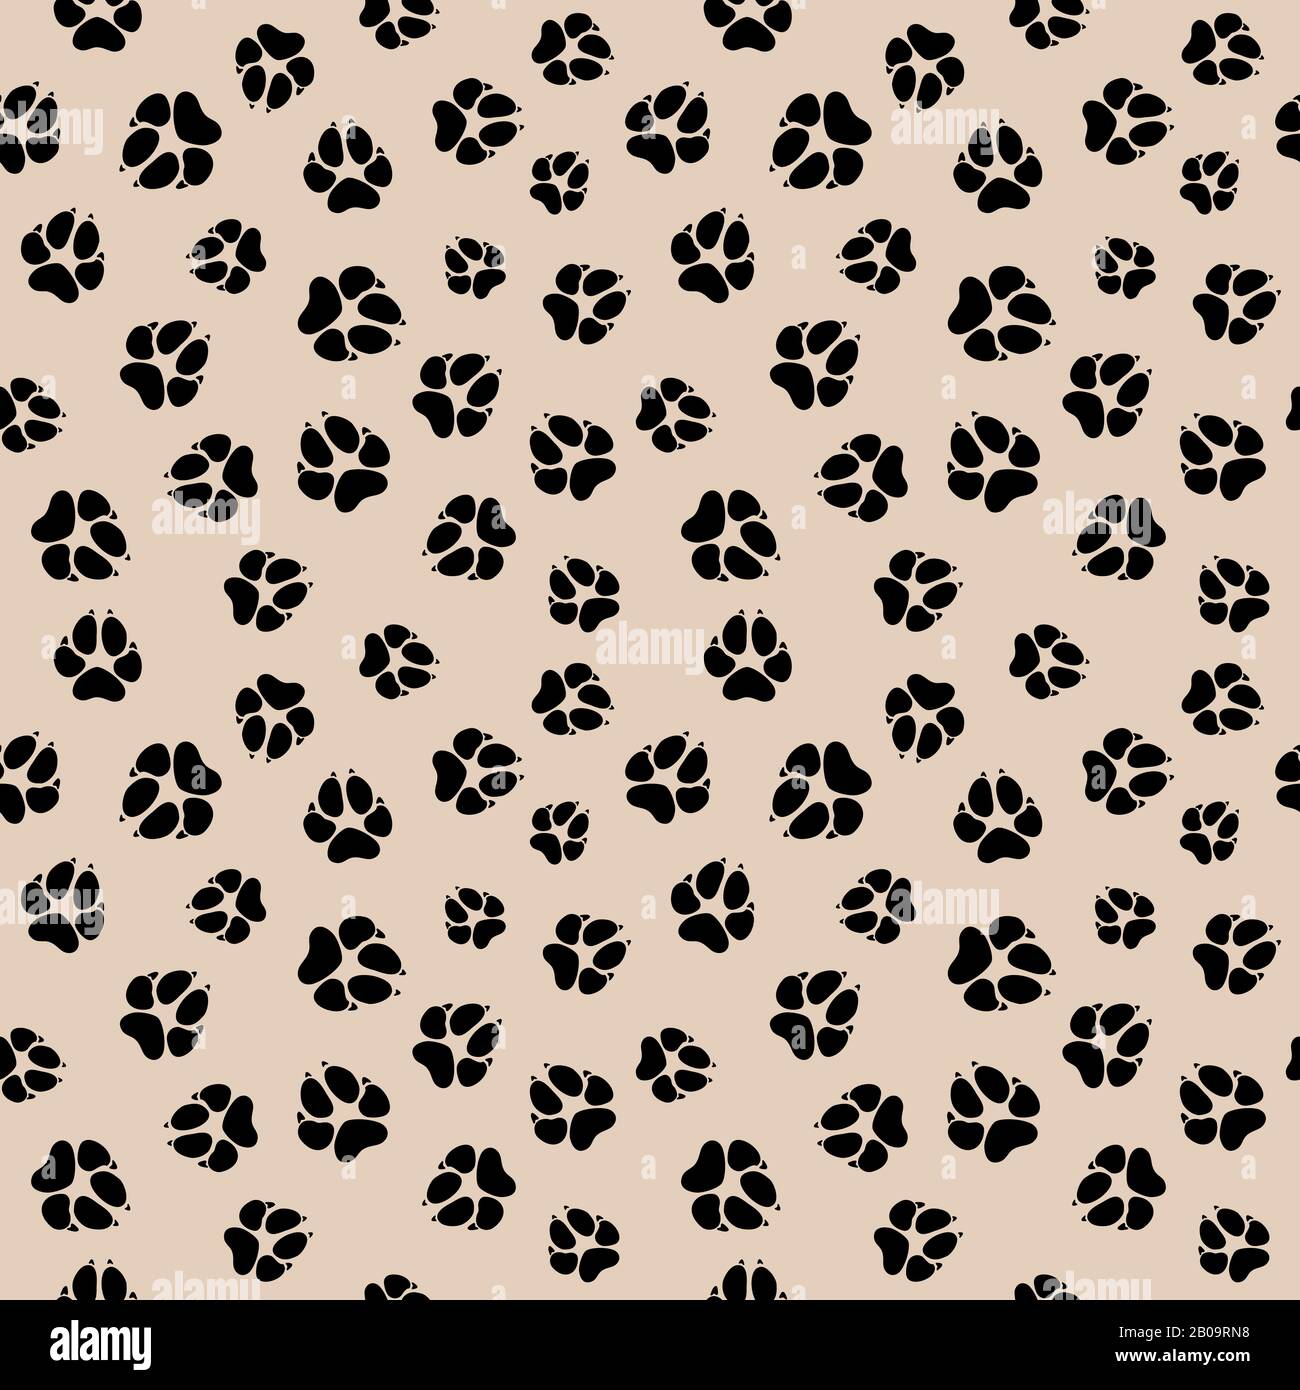 Vector Seamless Muster mit schmutzigen Hund- oder Wolfspausen Fußabdrücken. Hintergrund mit Hundepfote, Abbildung des Musters mit Tierpfote Stock Vektor